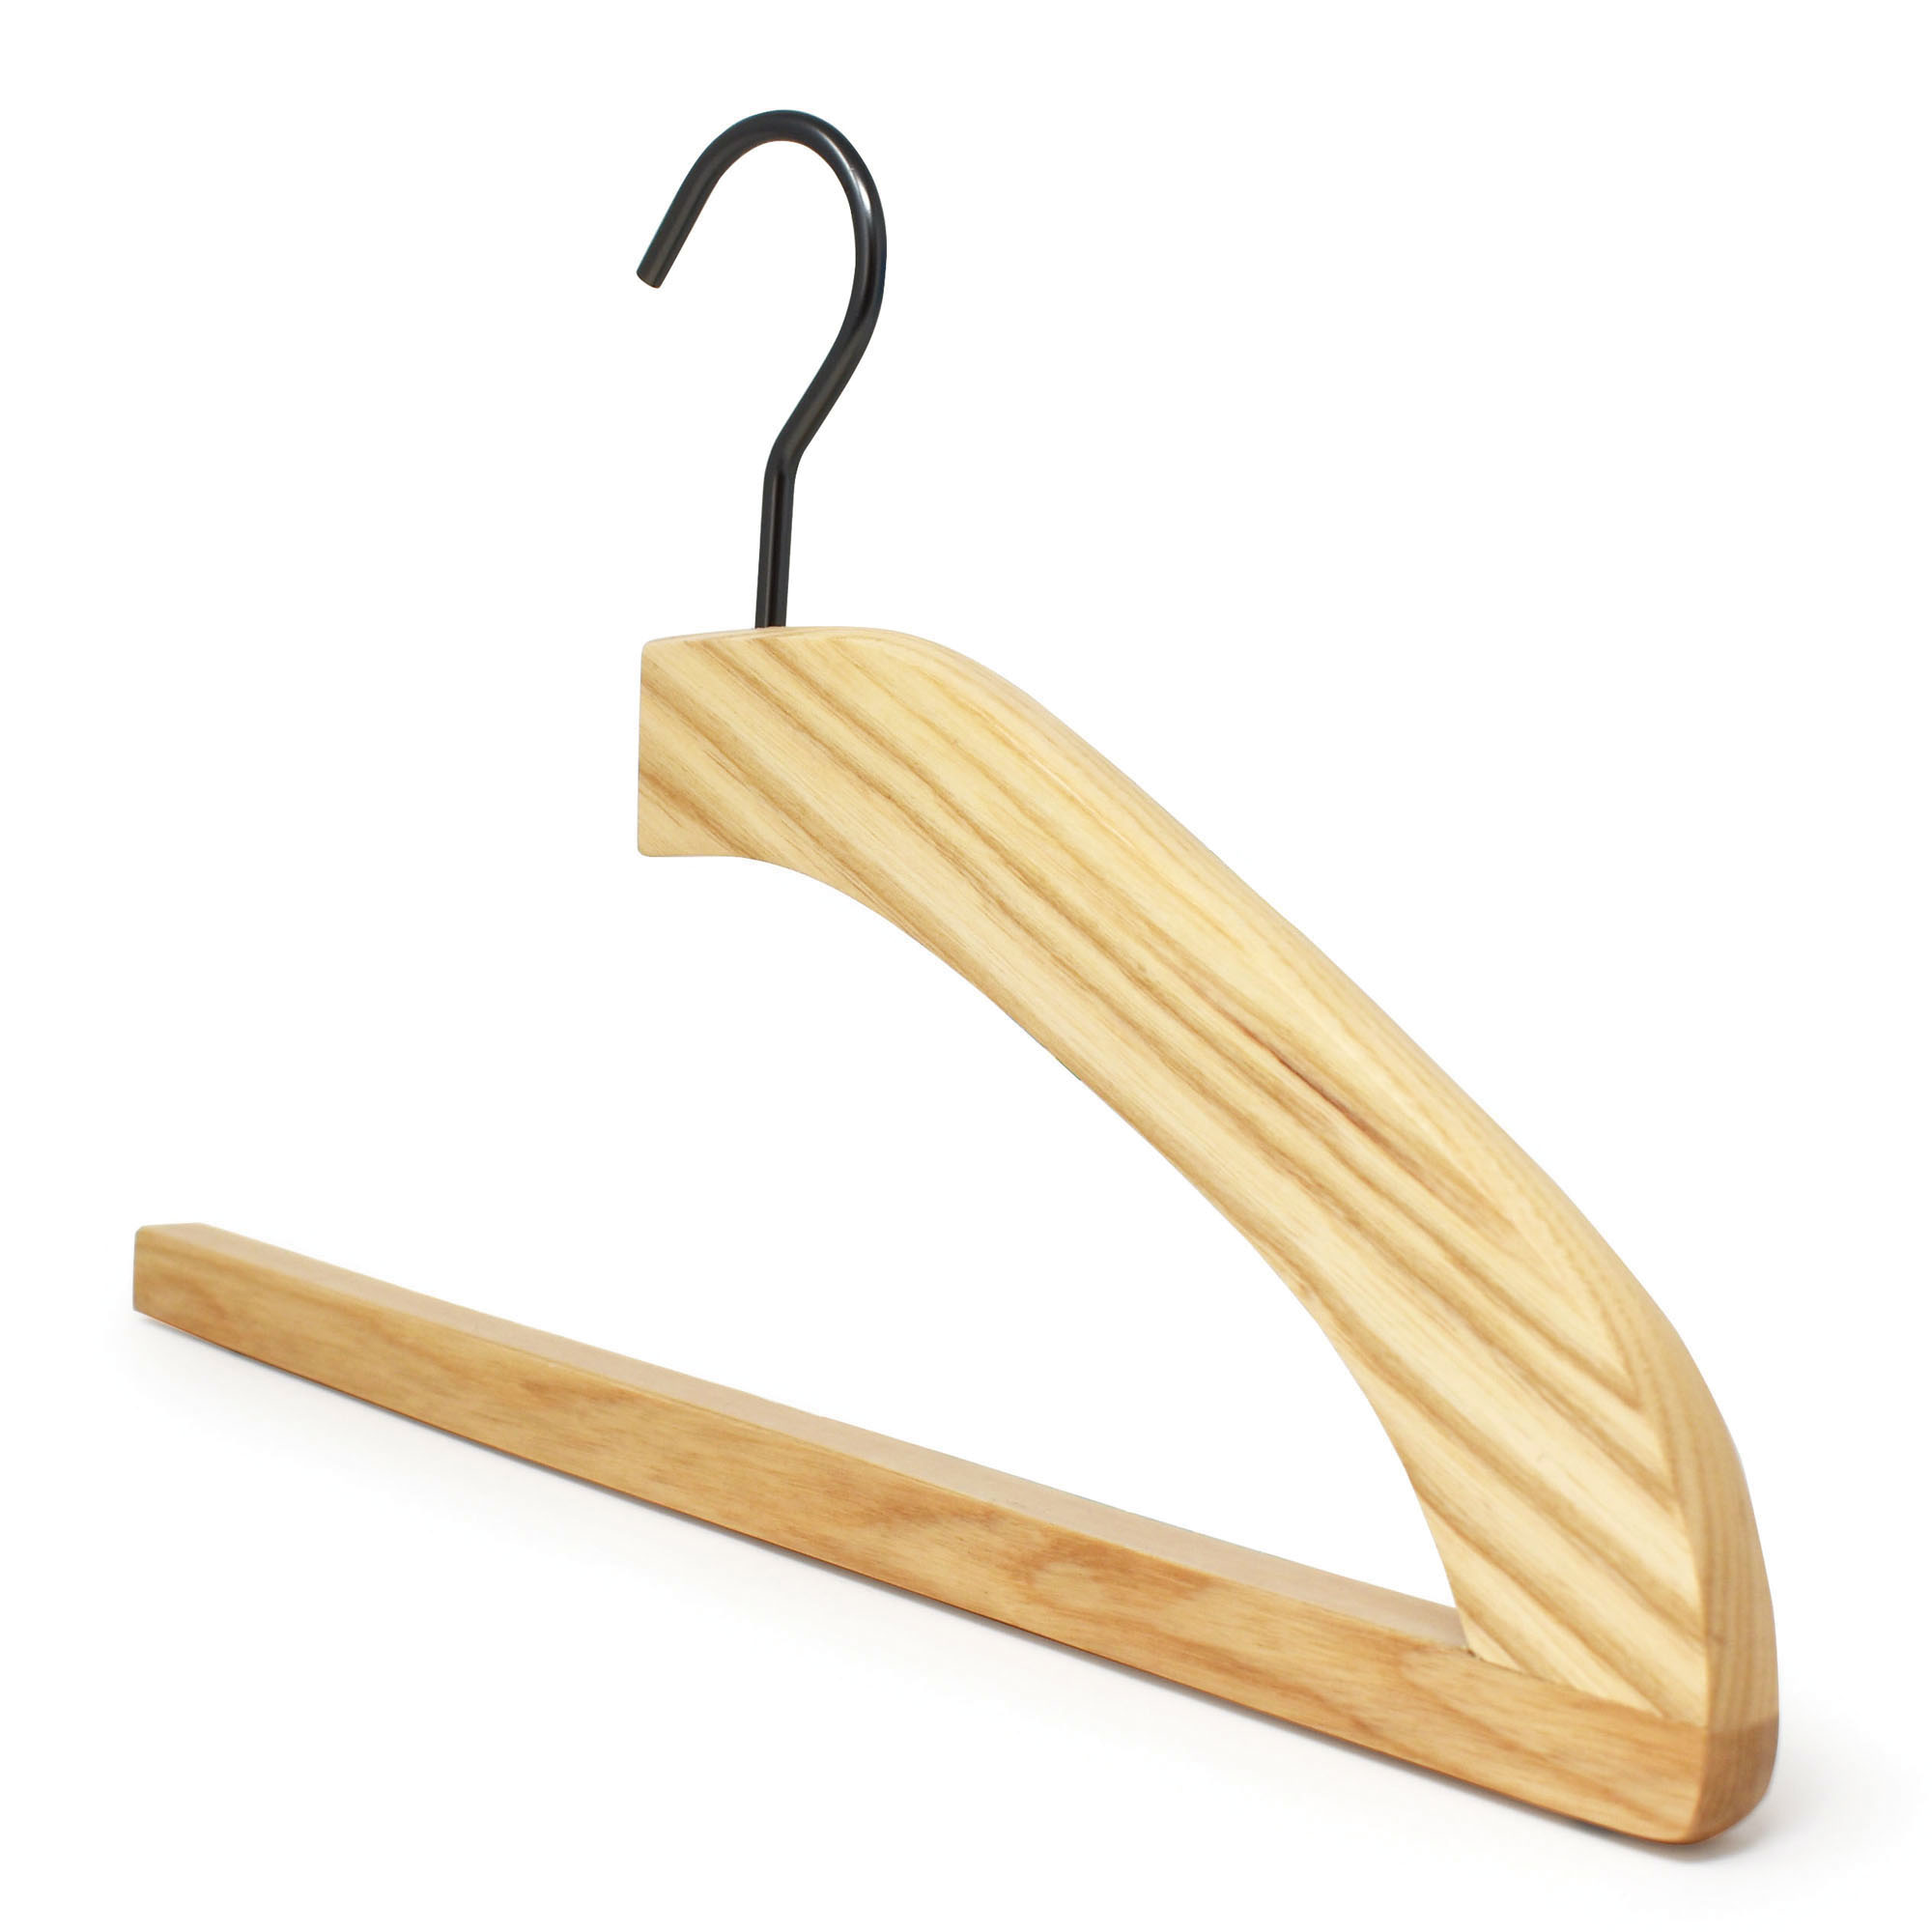 Felted Trouser Bar Hanger for Men : Luxury Wooden Hangers : Kirby Allison's  Hanger Project | KirbyAllison.com